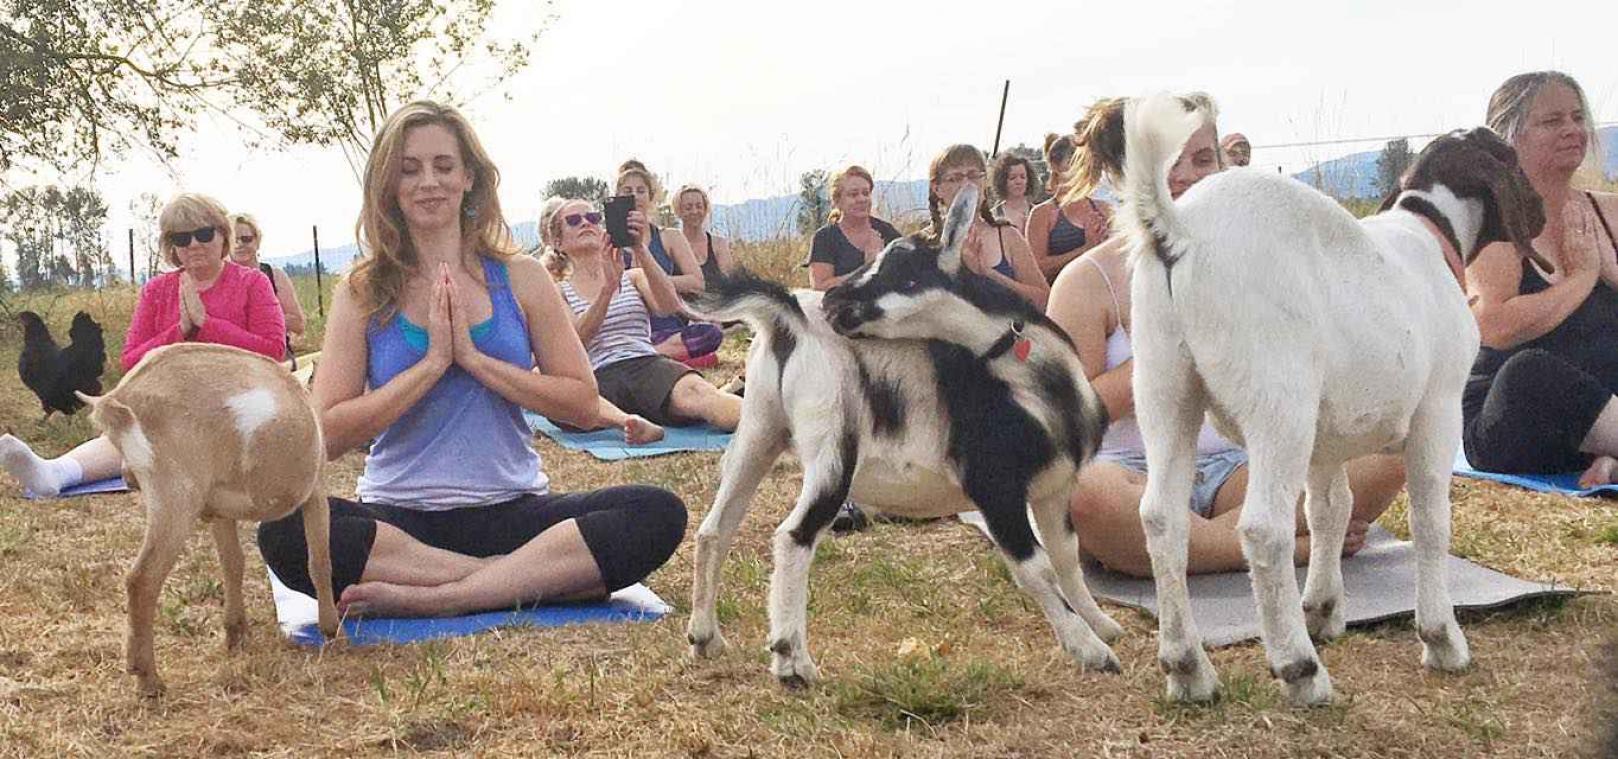 Yoga was nog nooit zo leuk dankzij deze geiten